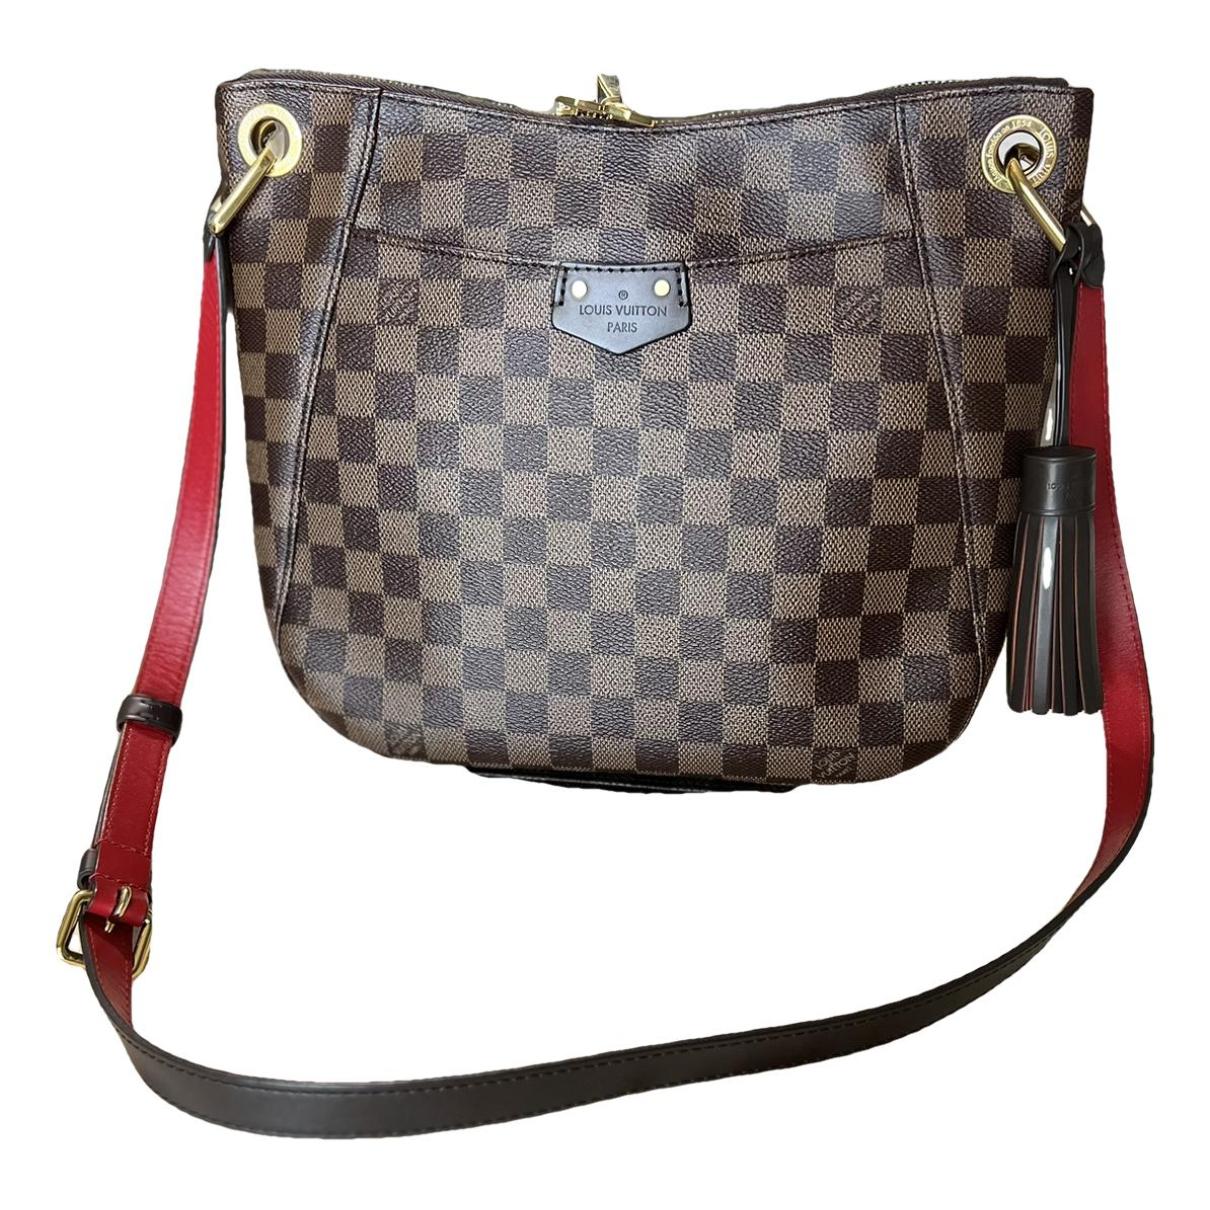 South Bank Louis Vuitton Handbags for Women - Vestiaire Collective